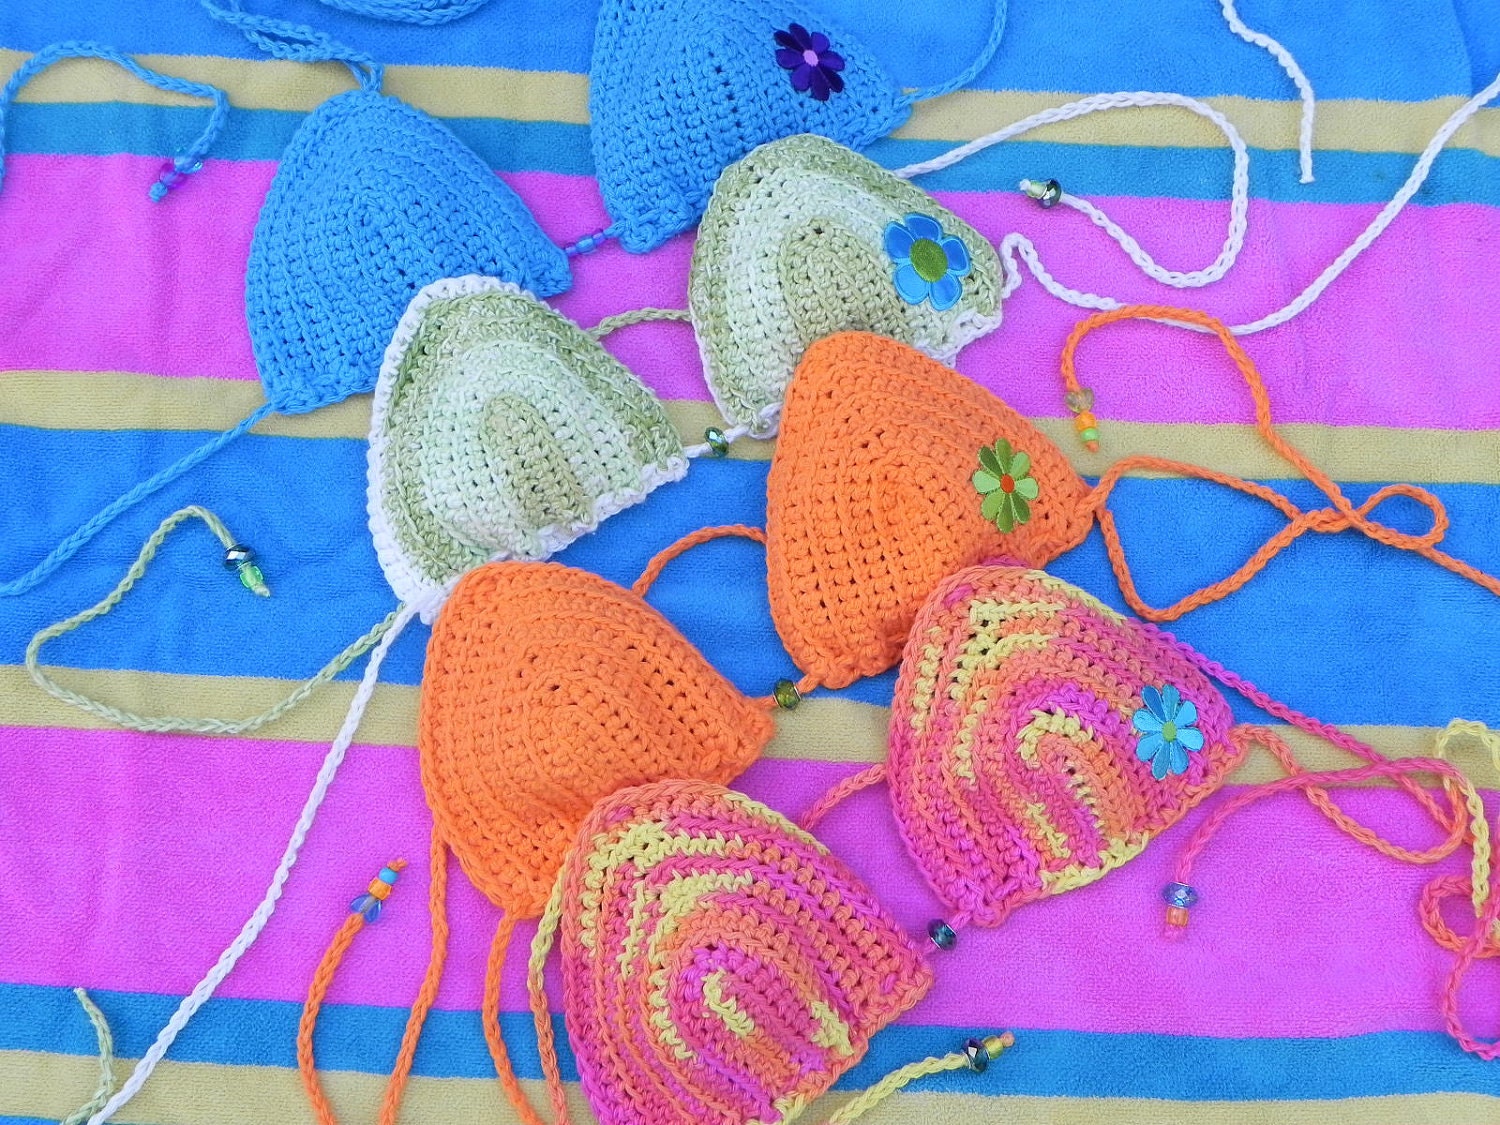 CROCHET HALTER TOPS PATTERNS - Crochet РІР‚вЂќ Learn How to Crochet